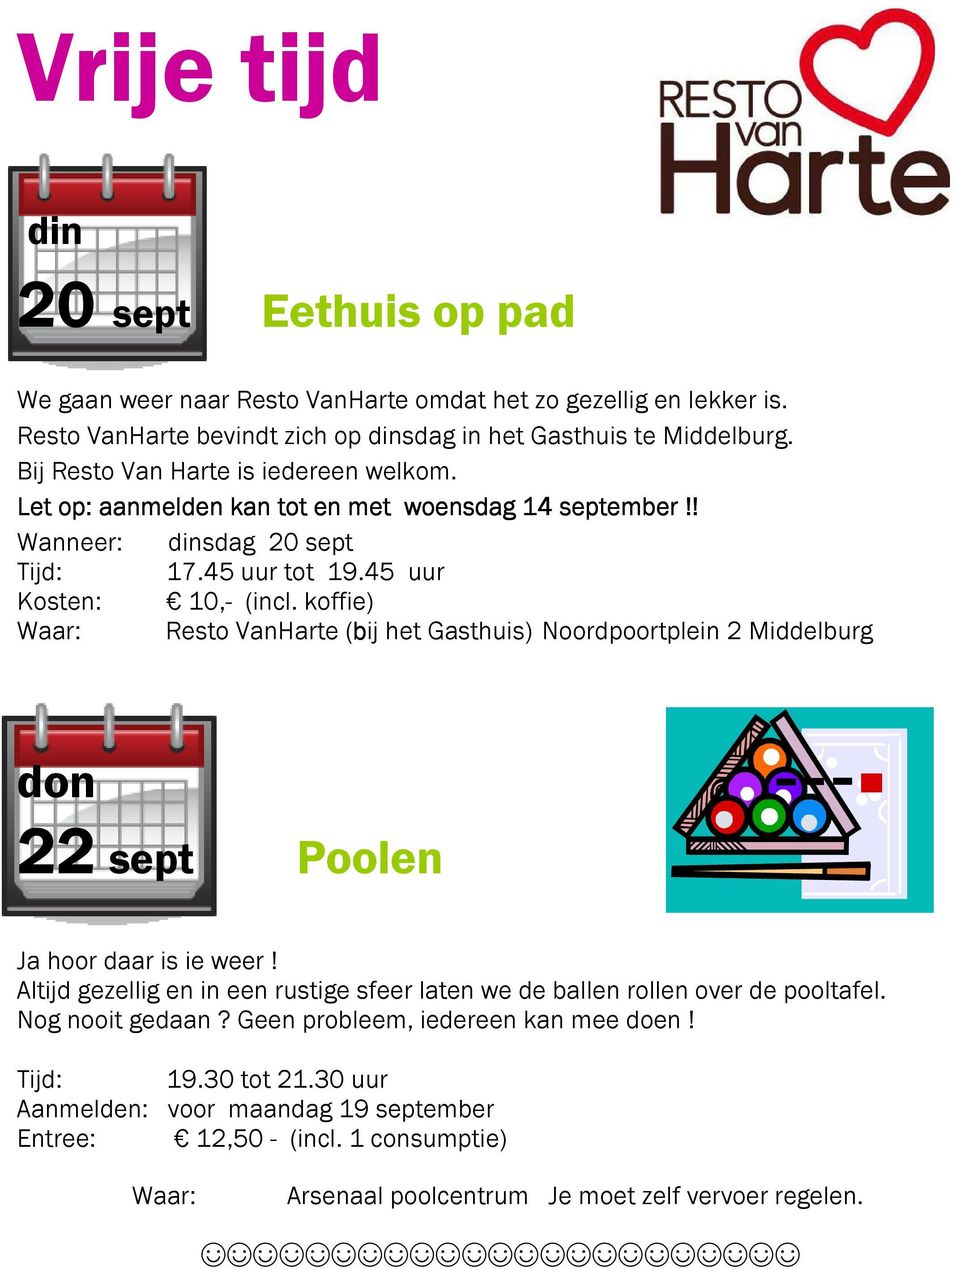 koffie) Waar: Resto VanHarte (bij het Gasthuis) Noordpoortplein 2 Middelburg don 22 sept Poolen Ja hoor daar is ie weer!